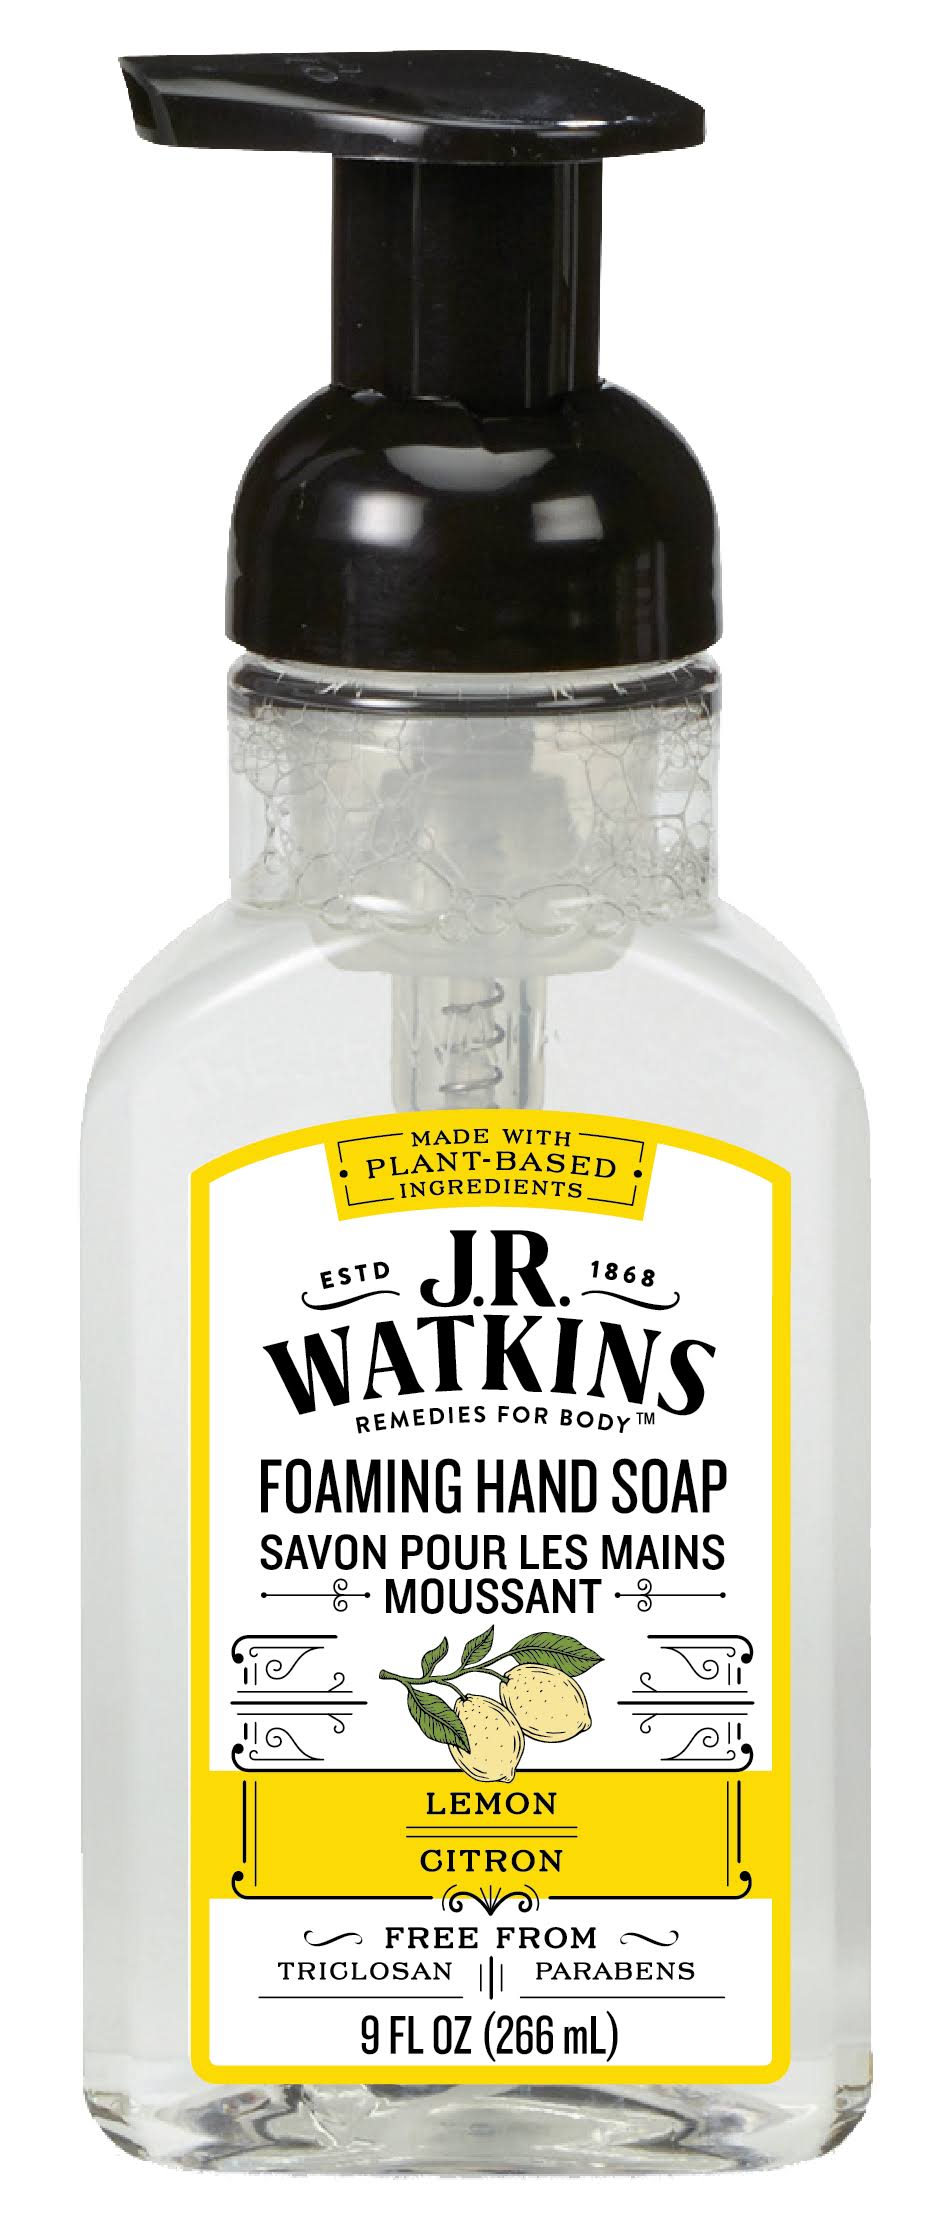 J.R. Watkins Foaming Hand Soap Lemon - 9.0 fl oz